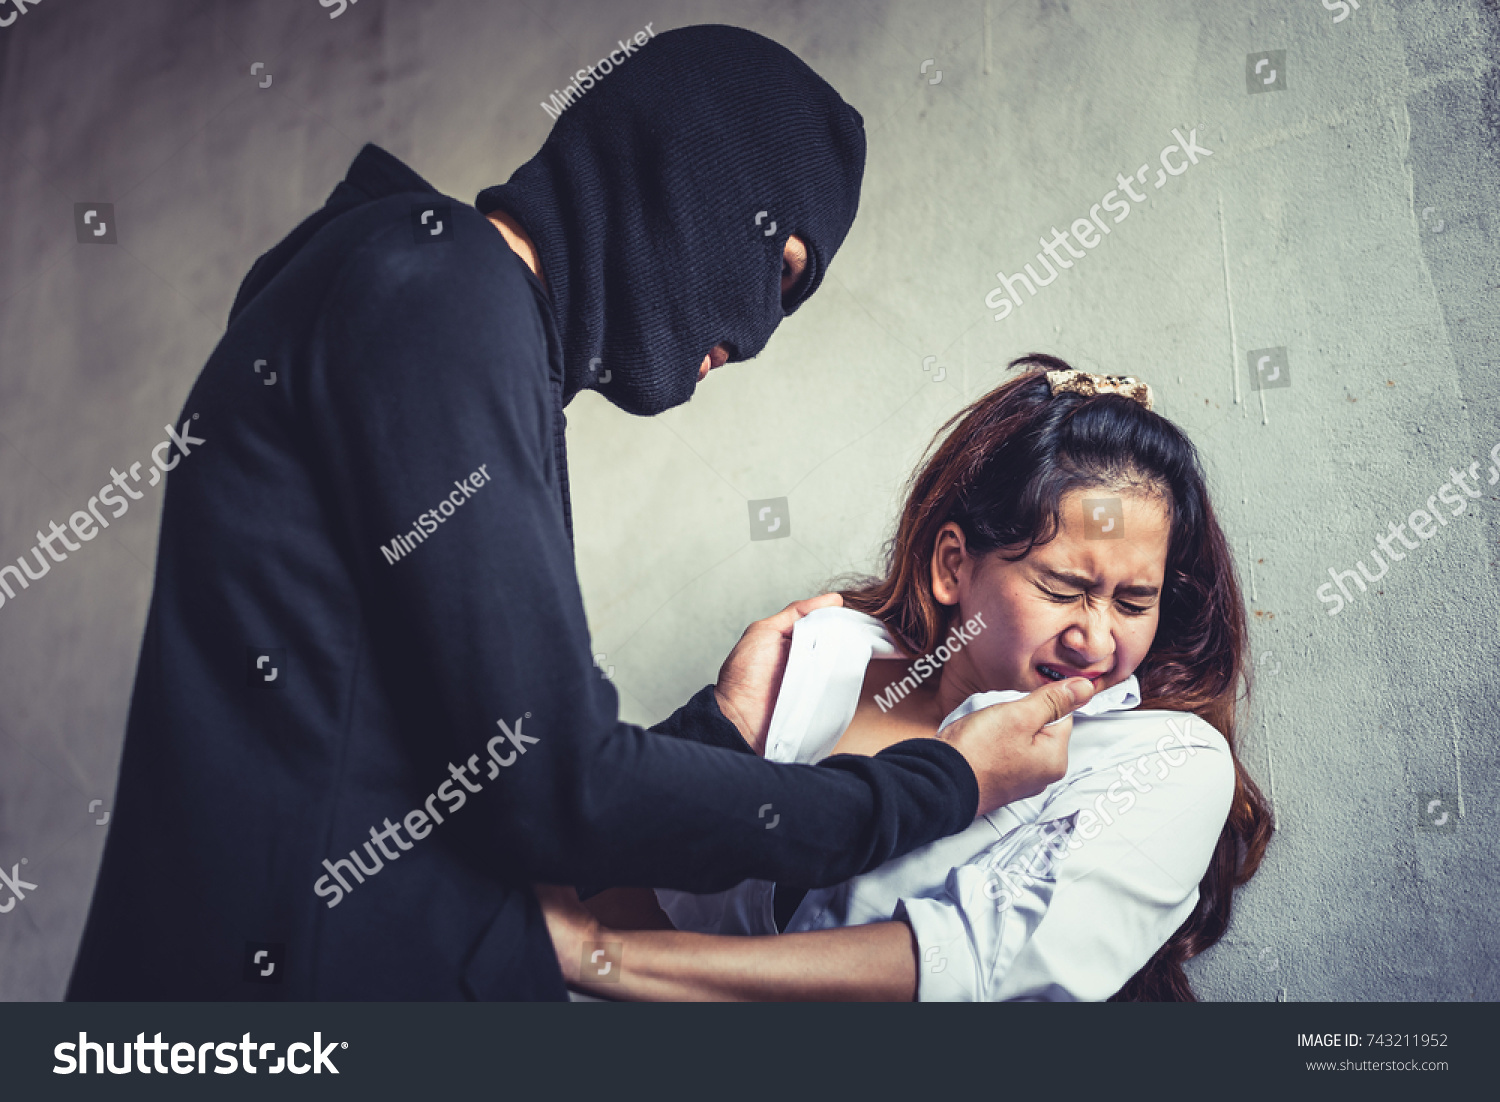 Принуждение жены братом. Мусульманские женщины насилие. Связанные грабителем девушки. Насилие по принуждению.